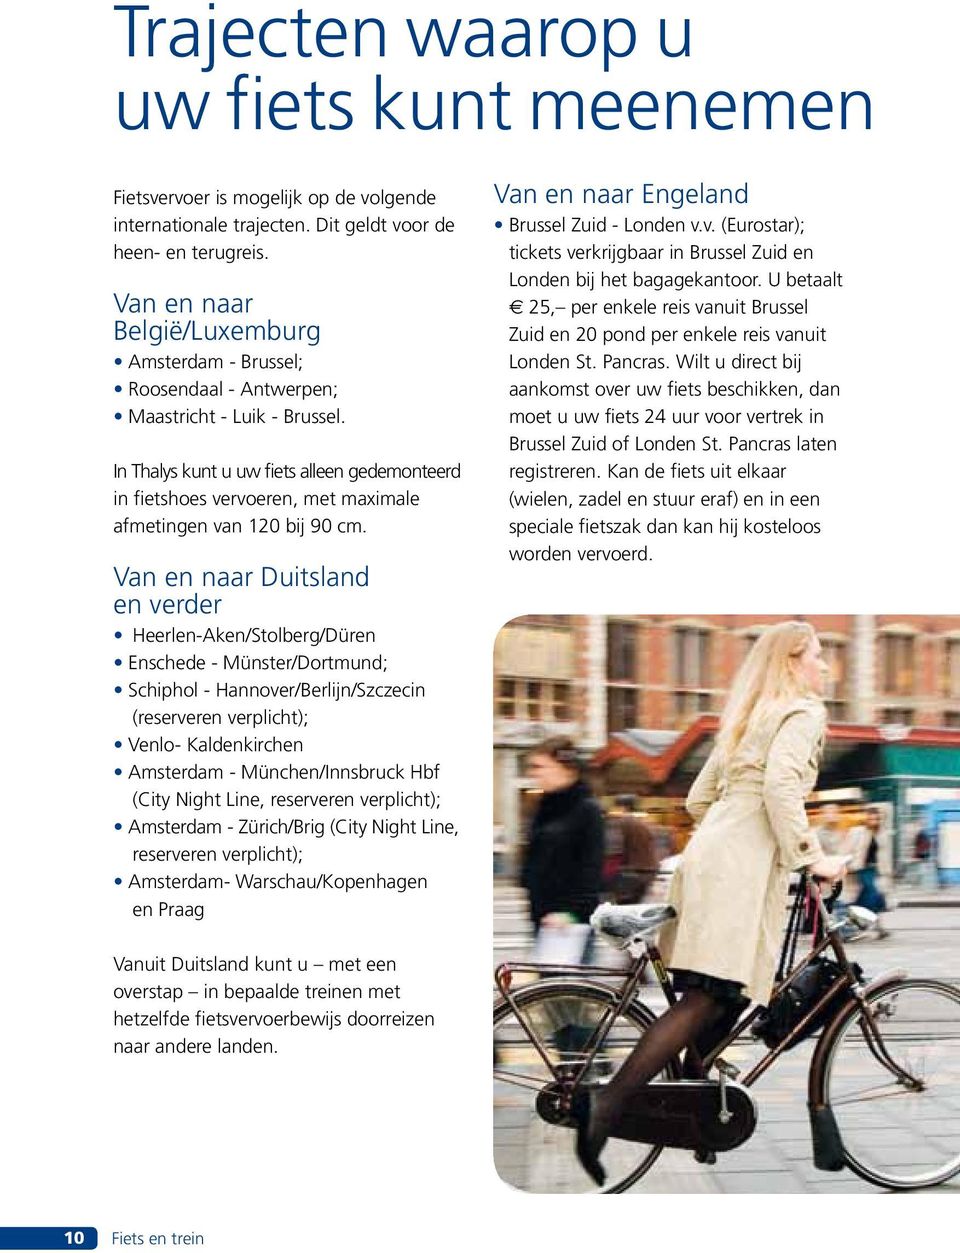 In Thalys kunt u uw fiets alleen gedemonteerd in fietshoes vervoeren, met maximale afmetingen van 120 bij 90 cm.